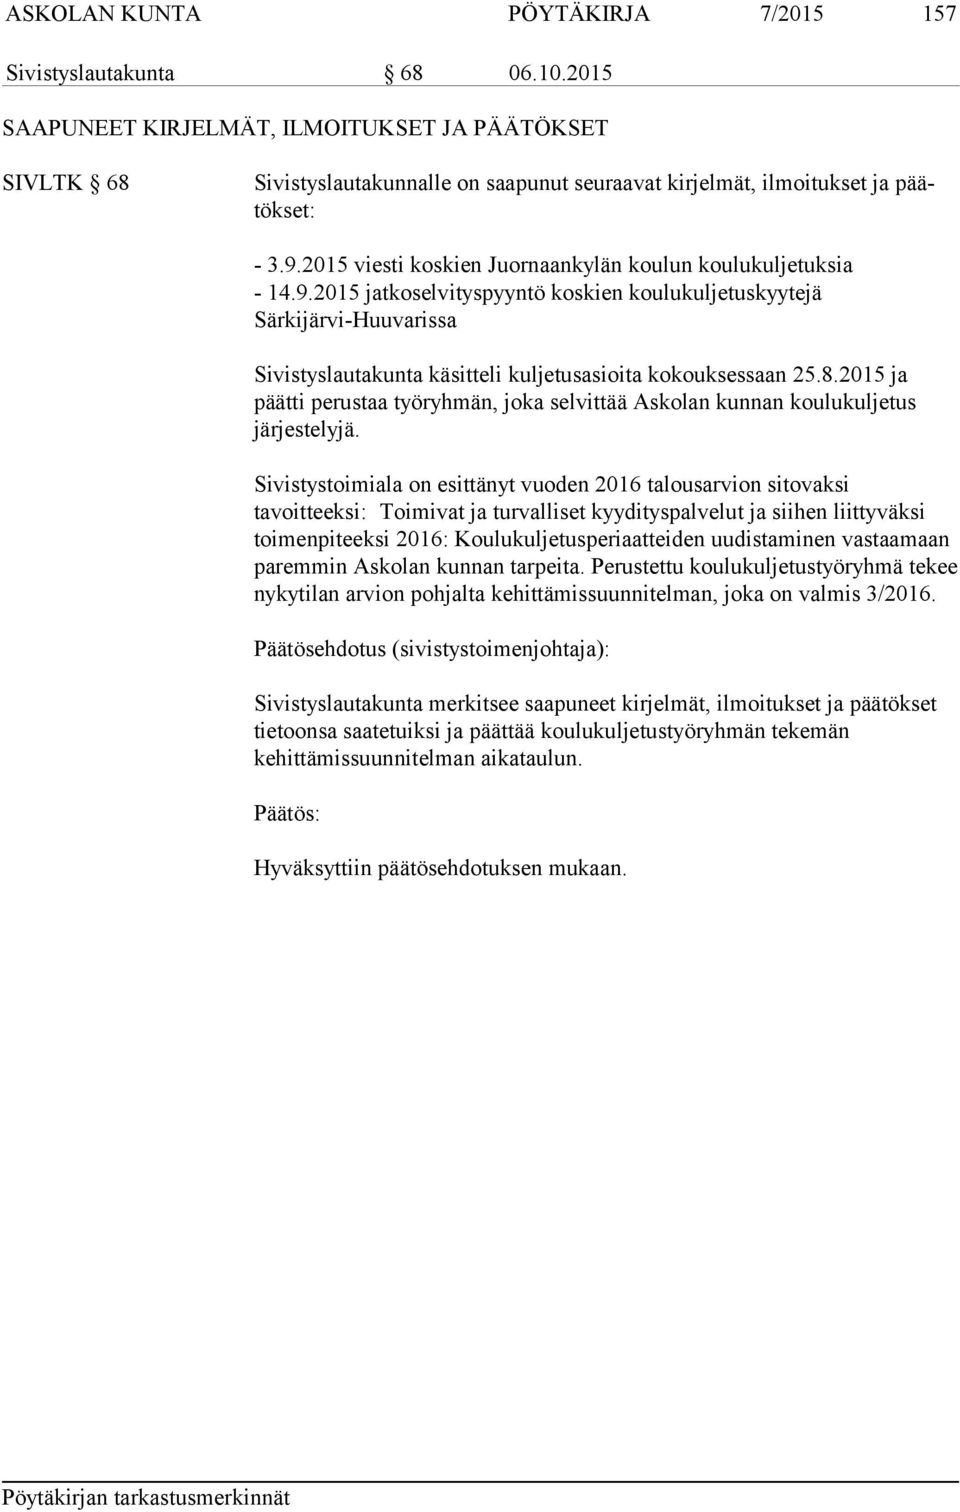 2015 viesti koskien Juornaankylän koulun koulukuljetuksia - 14.9.